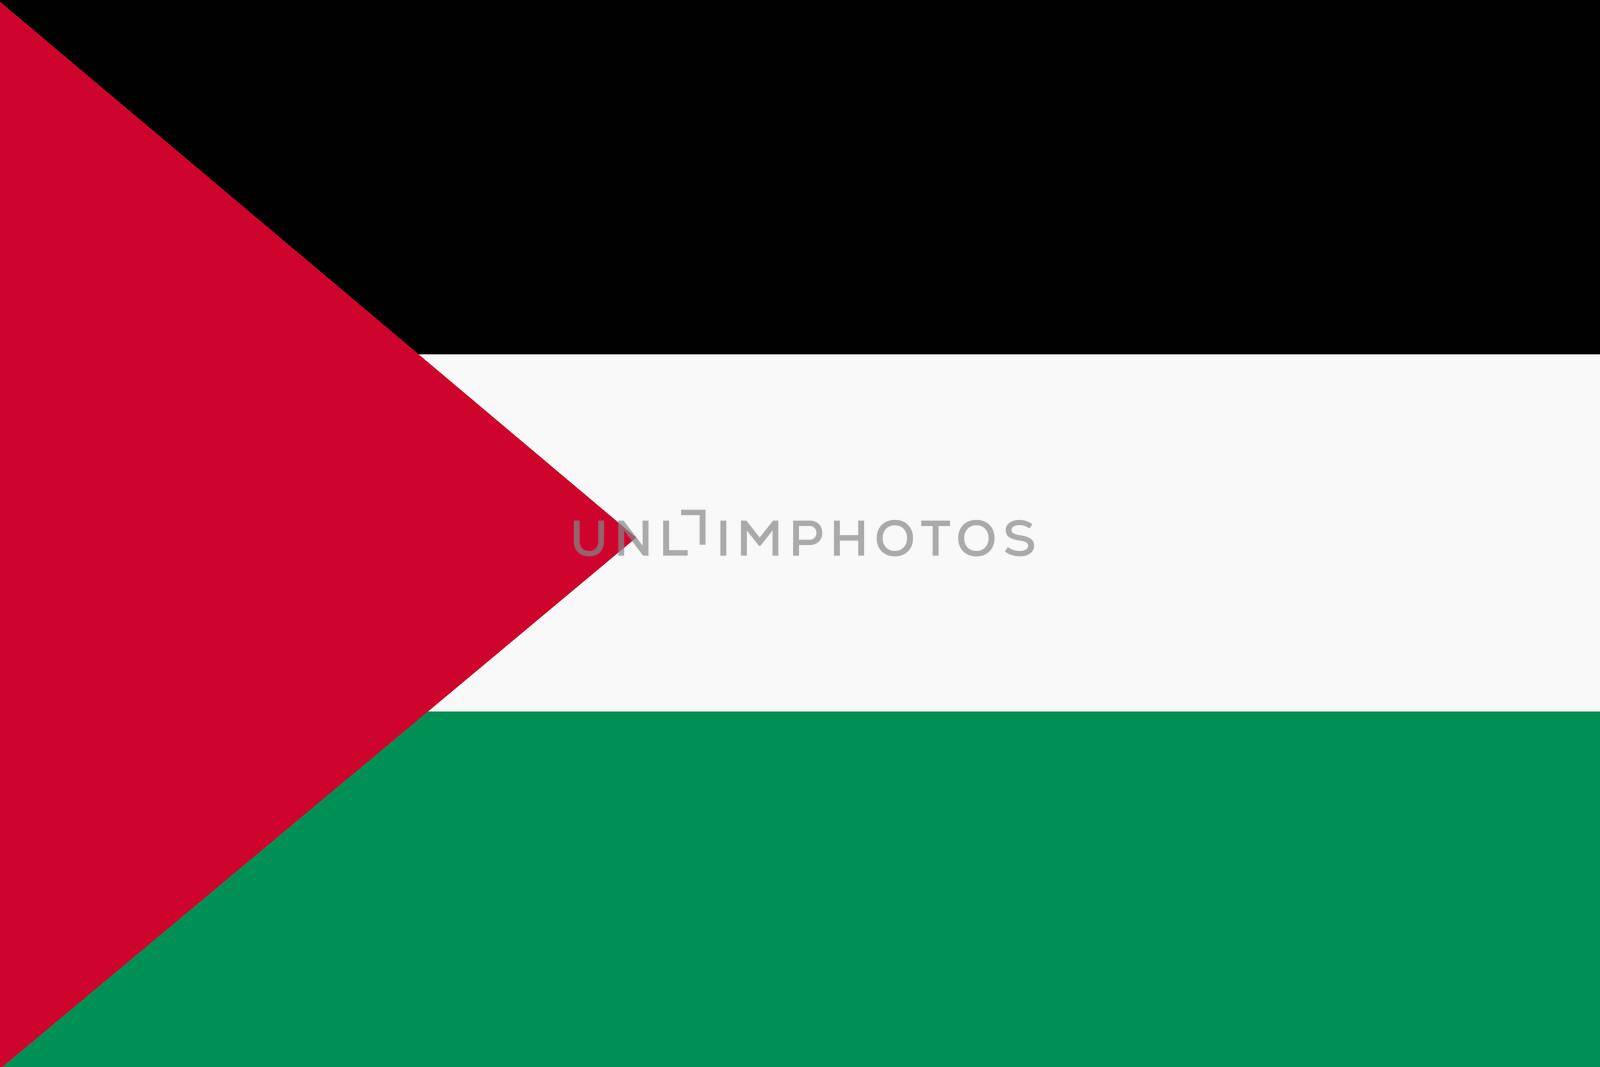 A Flag of Palestine background illustration large file